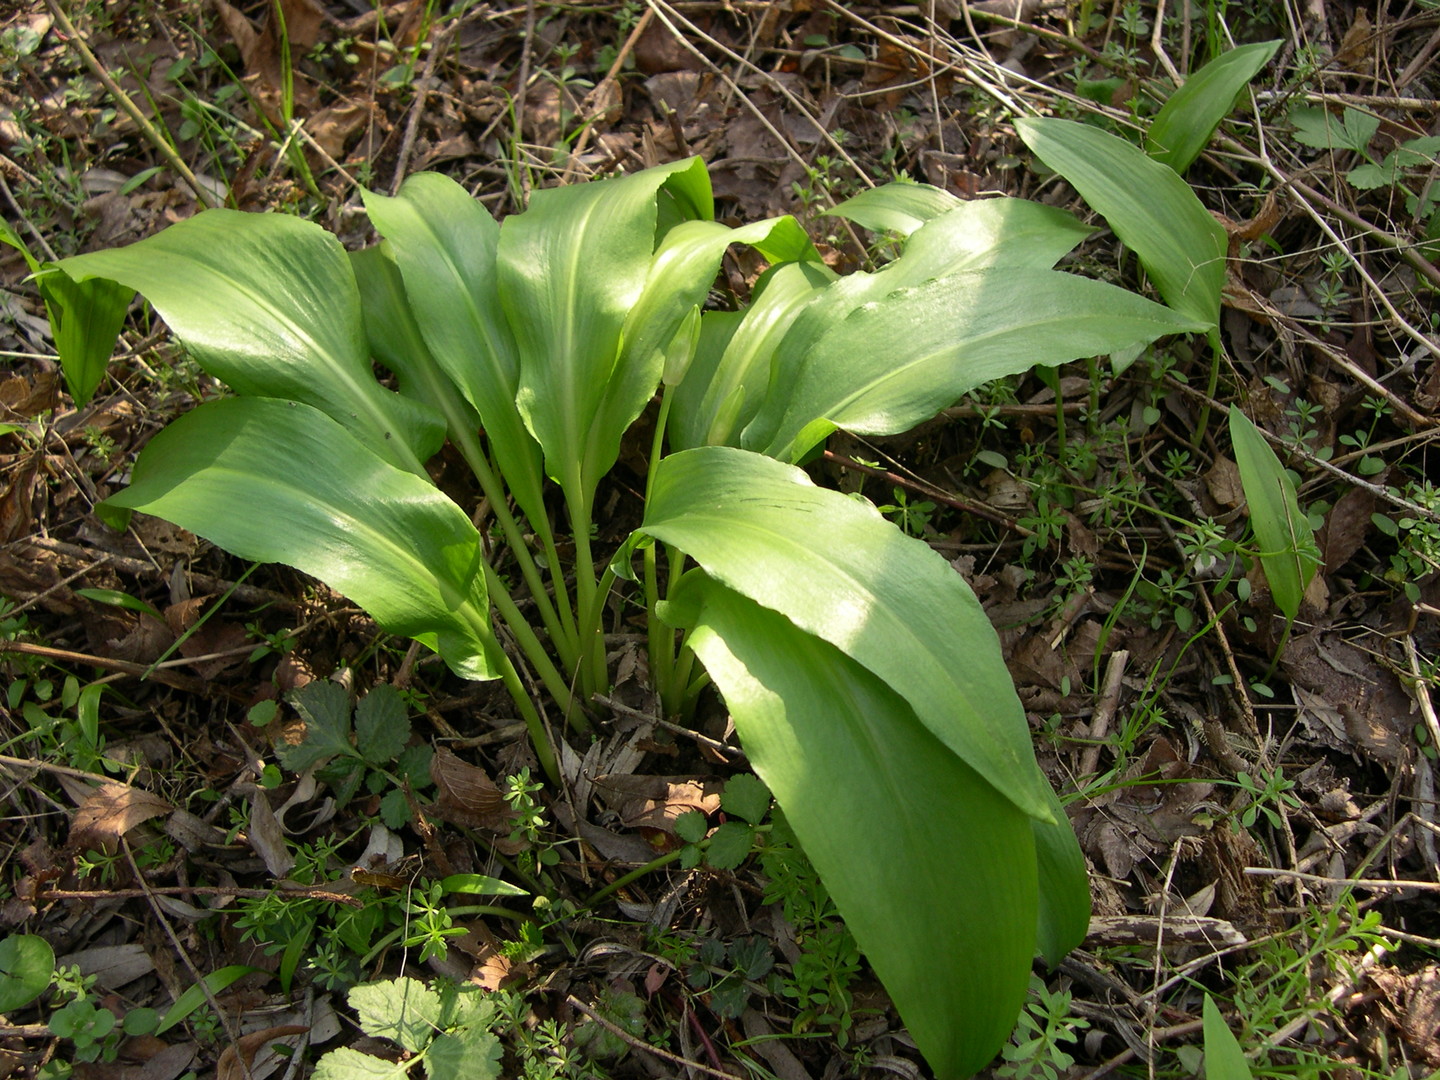 Allium ursinum (bear's garlic).